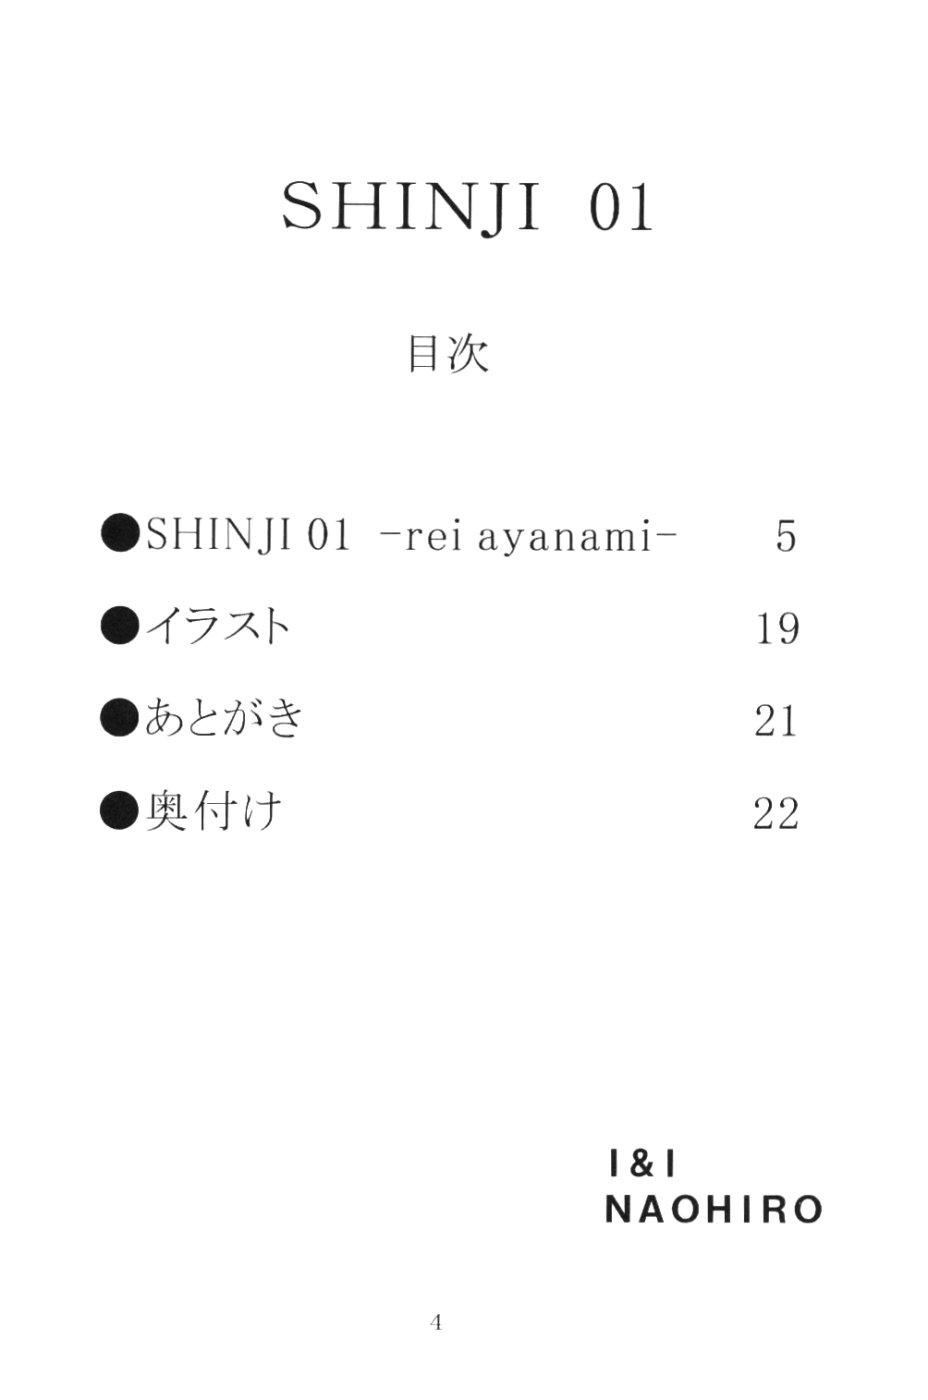 SHINJI 01 2